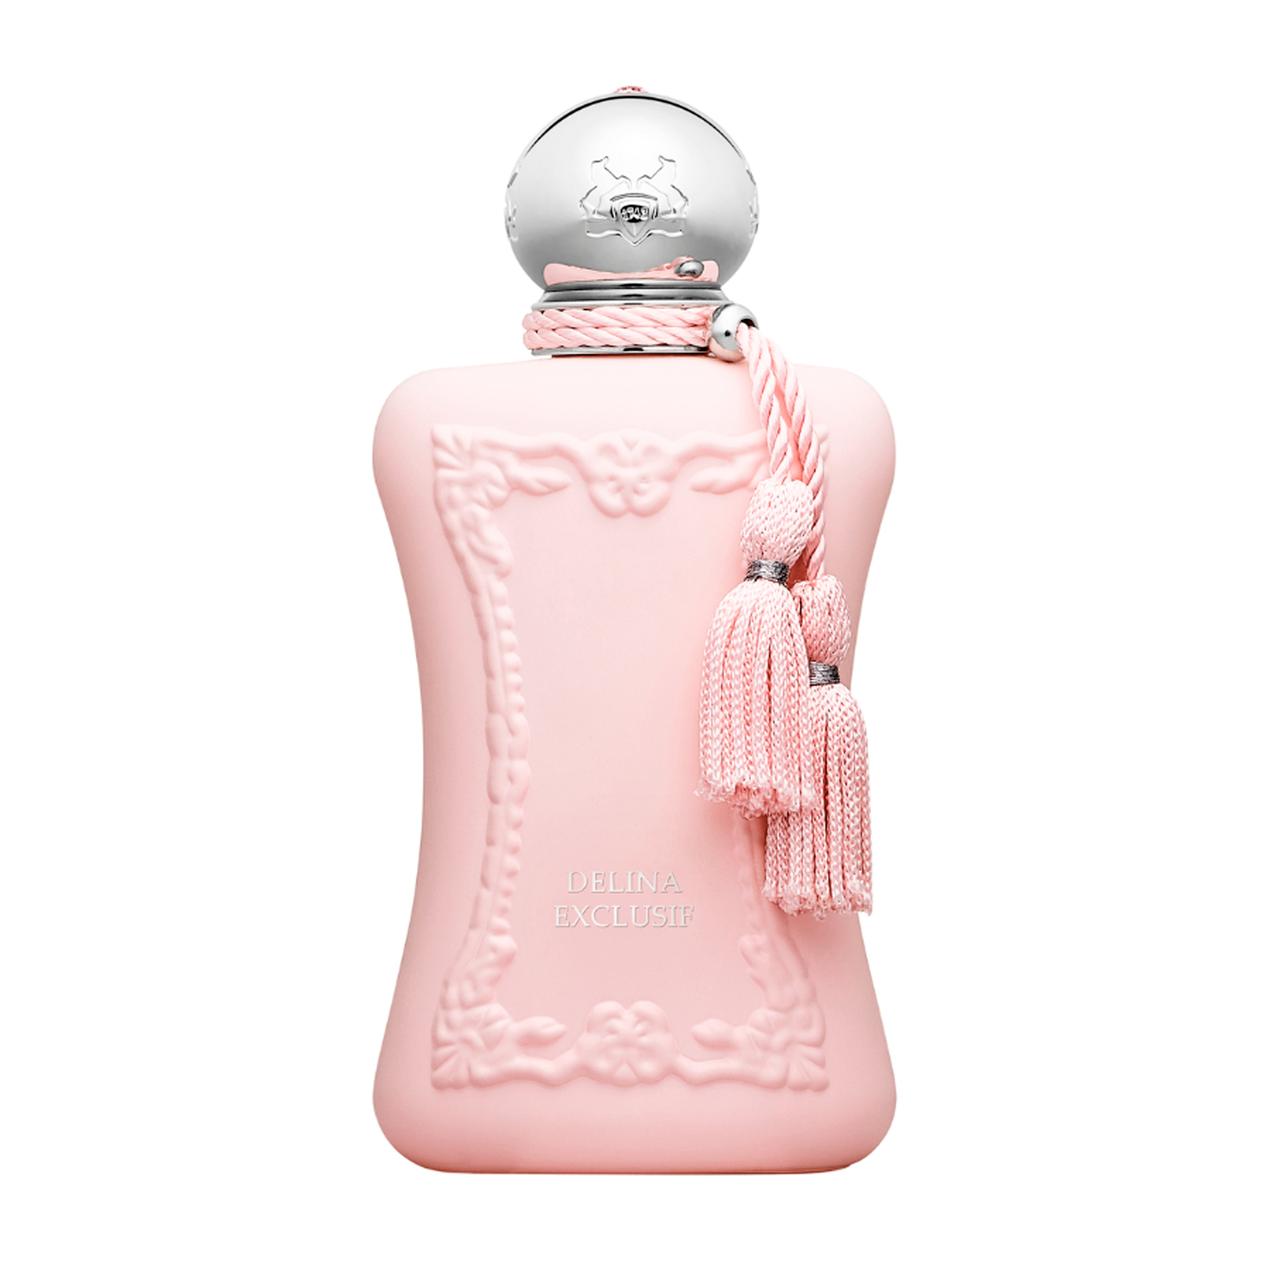 Delina Exclusif Parfum 75 ml för 3230 kr på Kicks